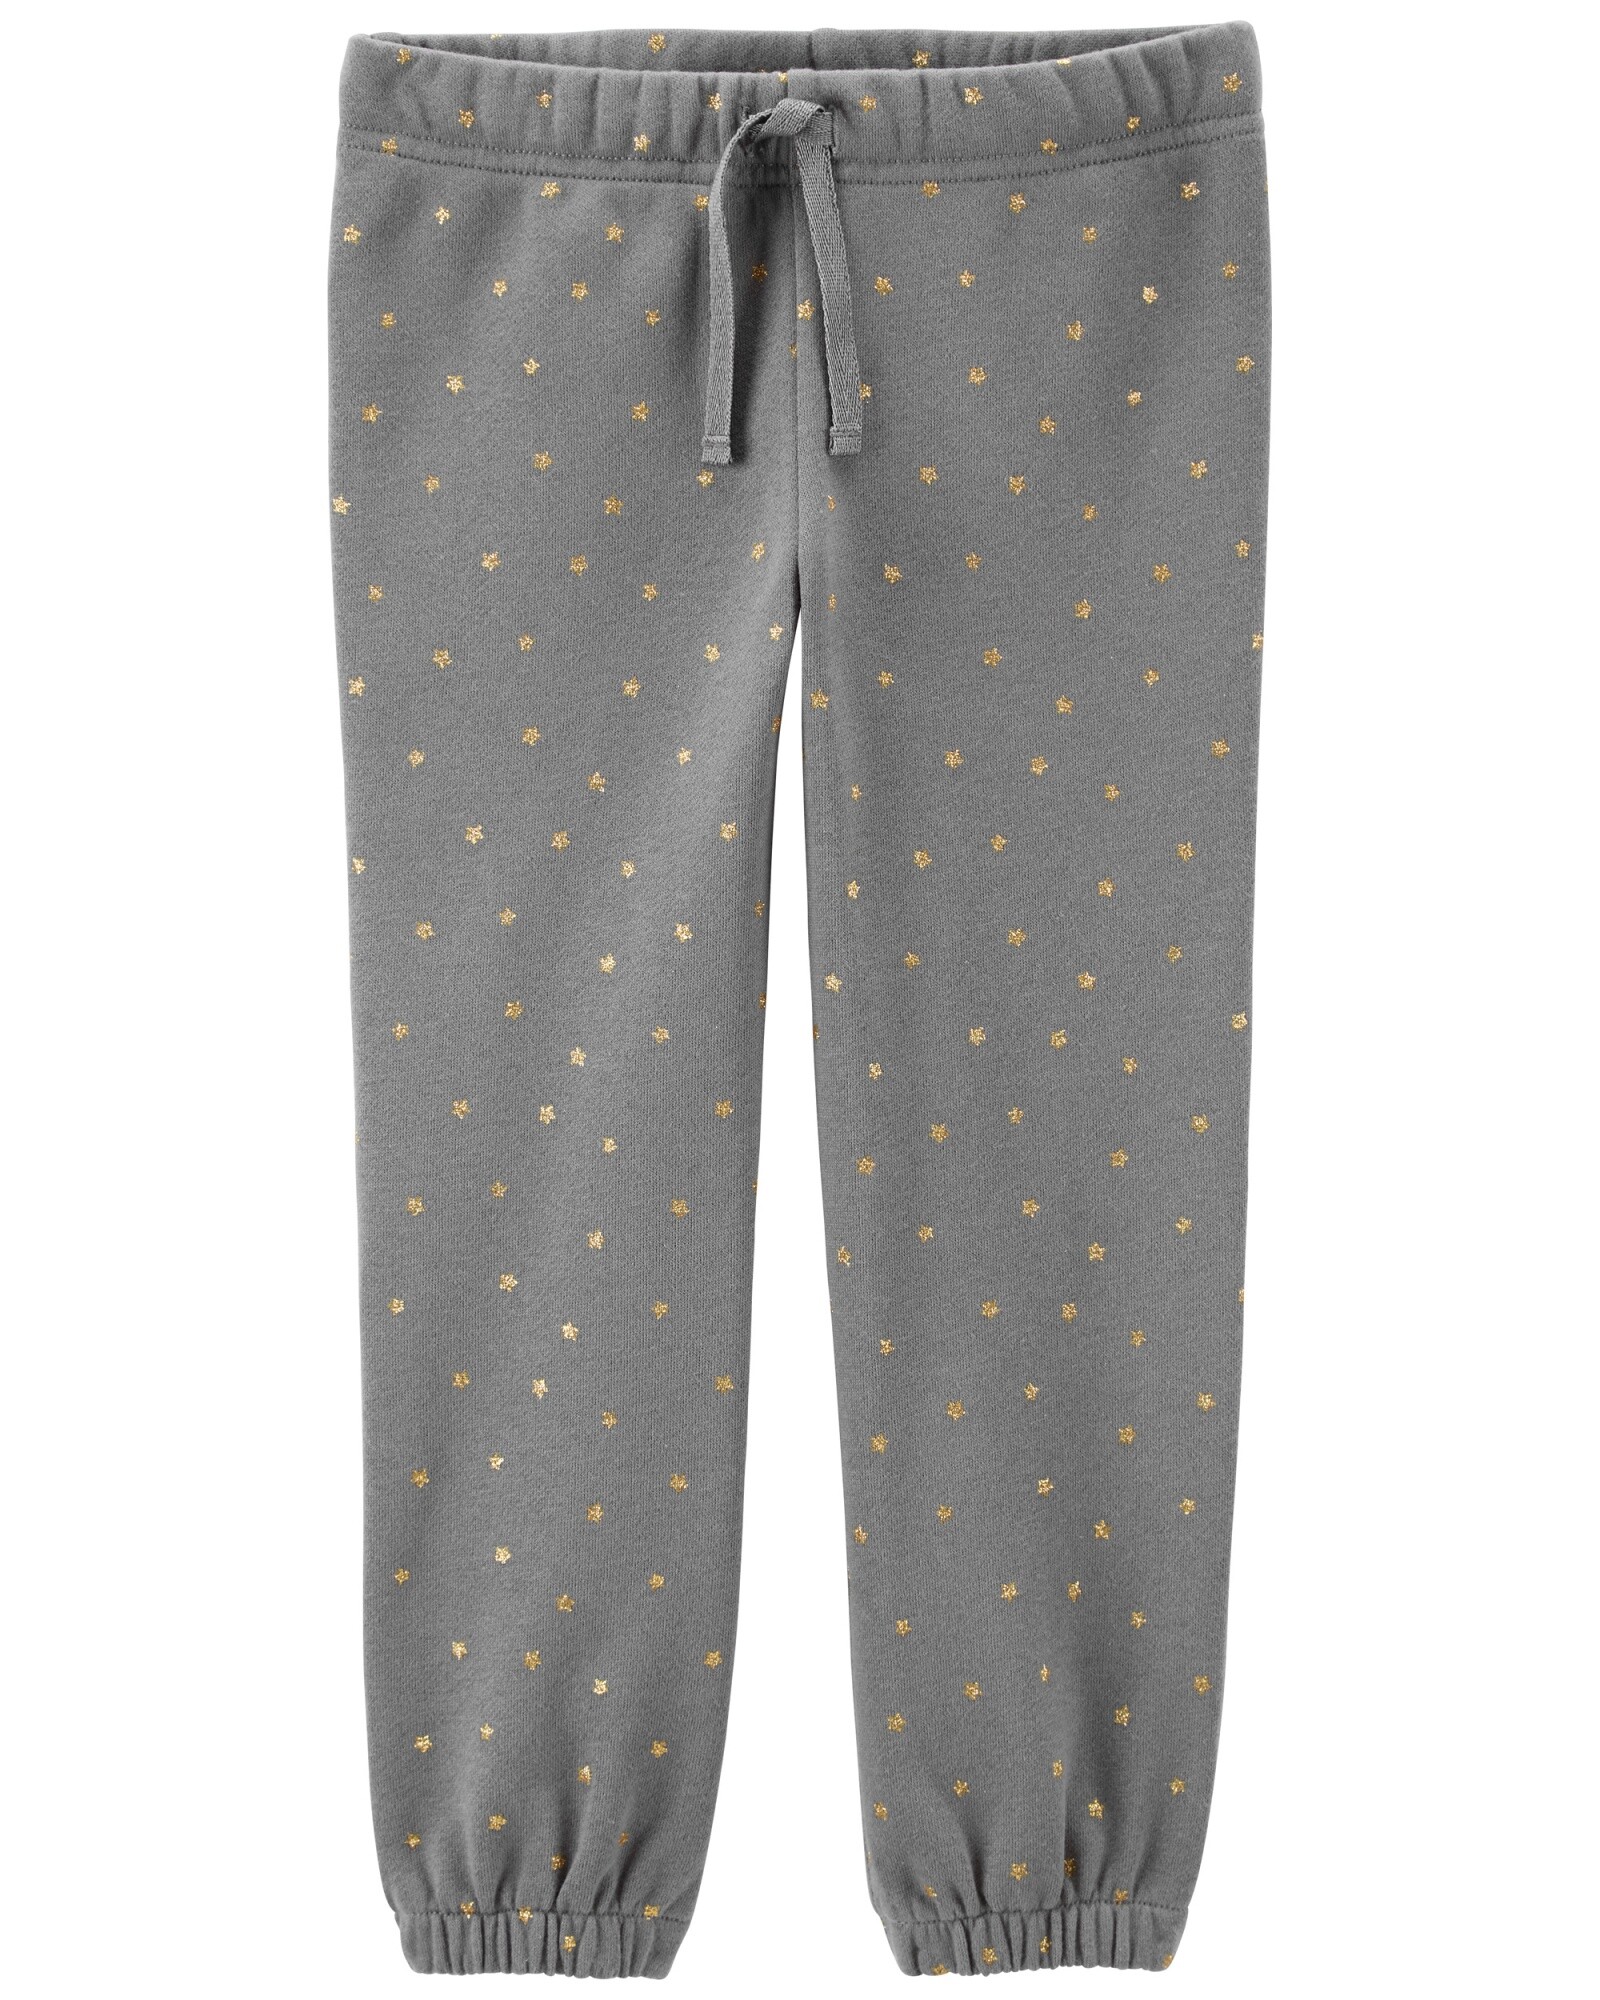 Pantalón de algodón con felpa ligero diseño estrellas 0